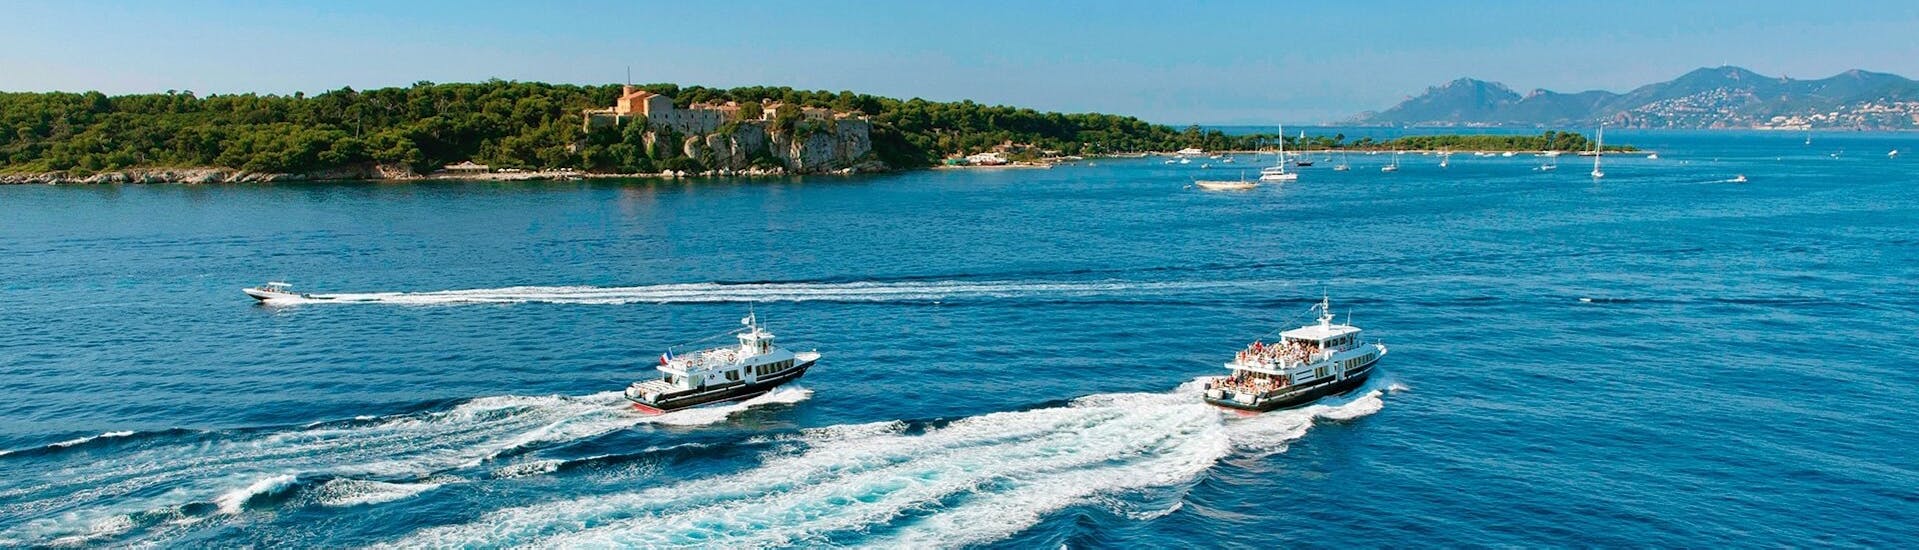 Uitzicht op de boten tijdens de boottransfer van Cannes naar het eiland Sainte-Marguerite met Trans Côte d'Azur.